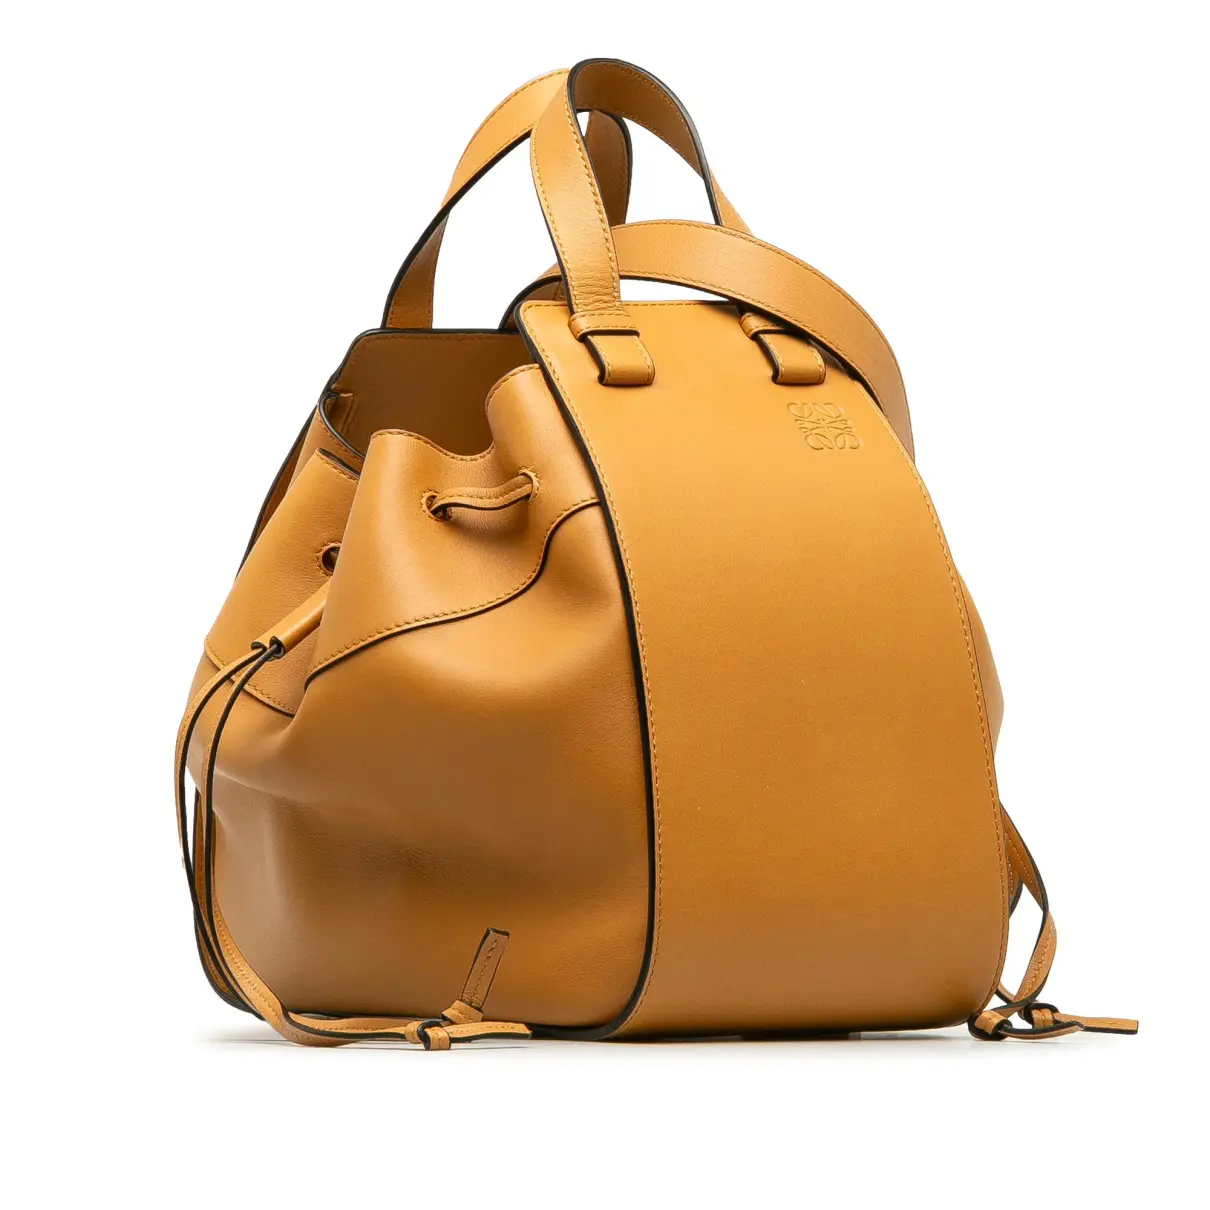 Buy Loewe Hammock leather crossbody bag online